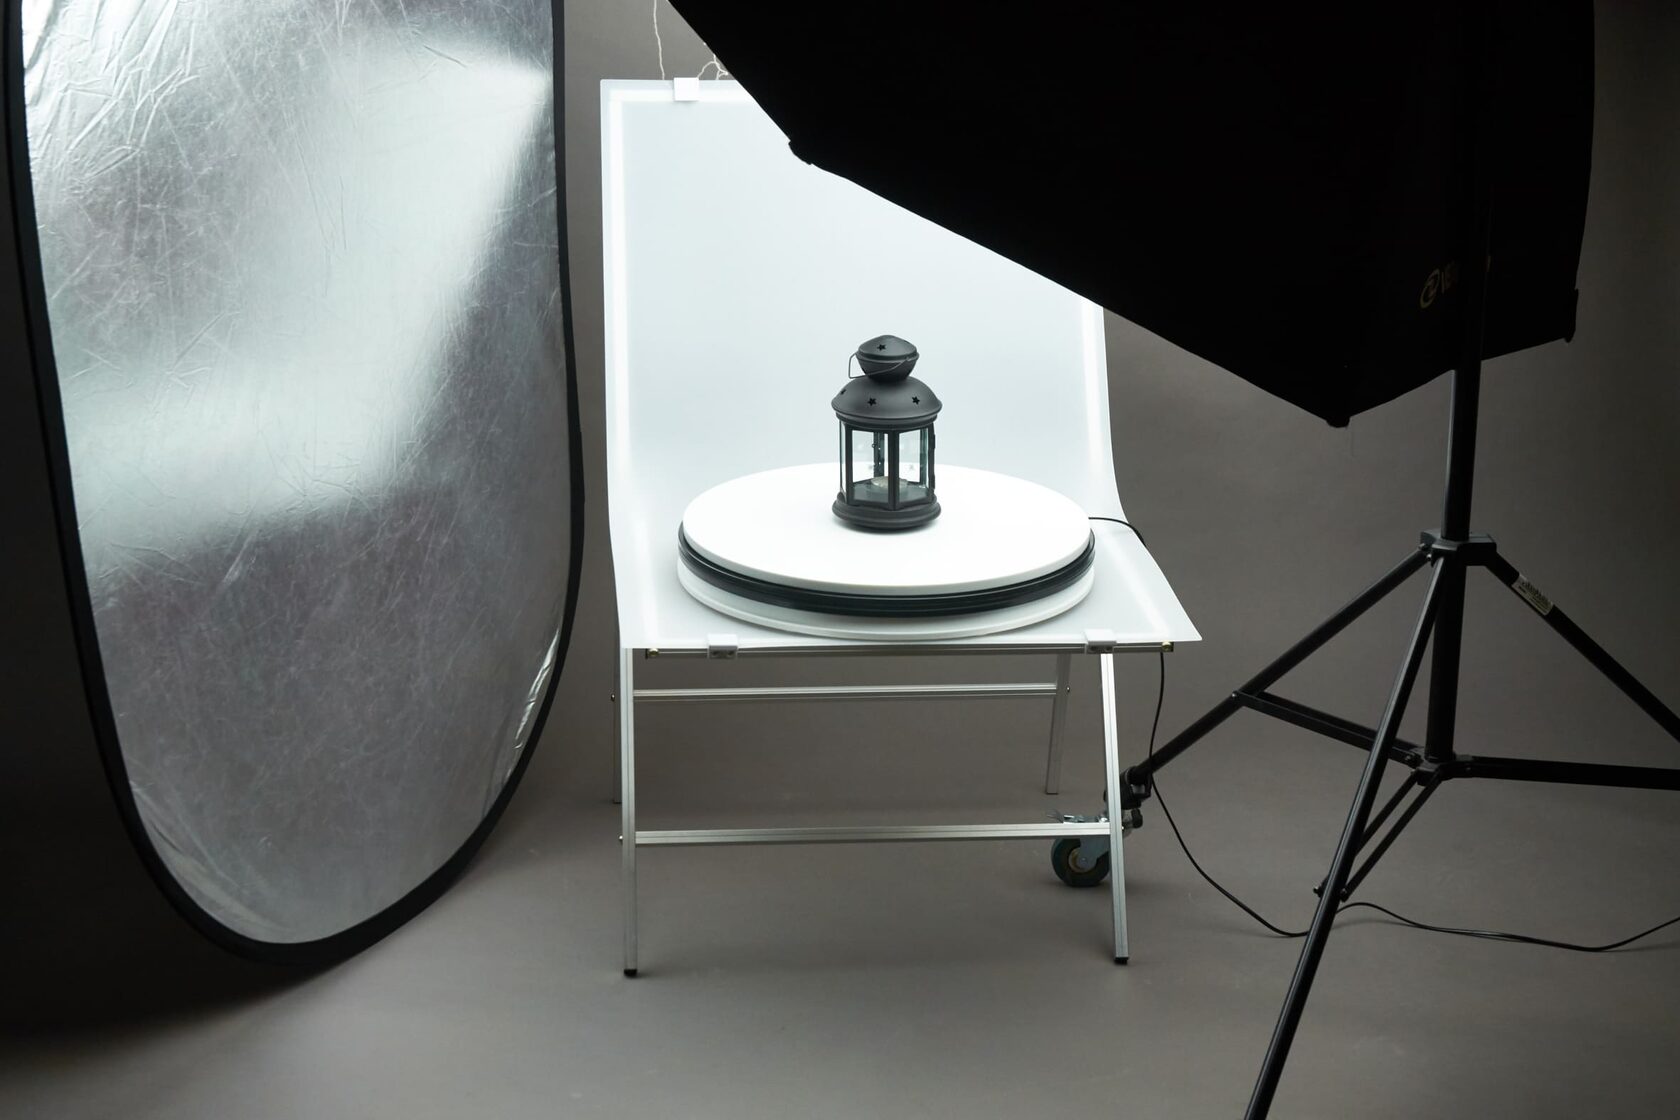 Предметный столик. Grifon стол для предметной съемки черный. Предметный стол для фотосъемки. Фотостудия для предметной съемки. Предметный столик для фотосъемки.